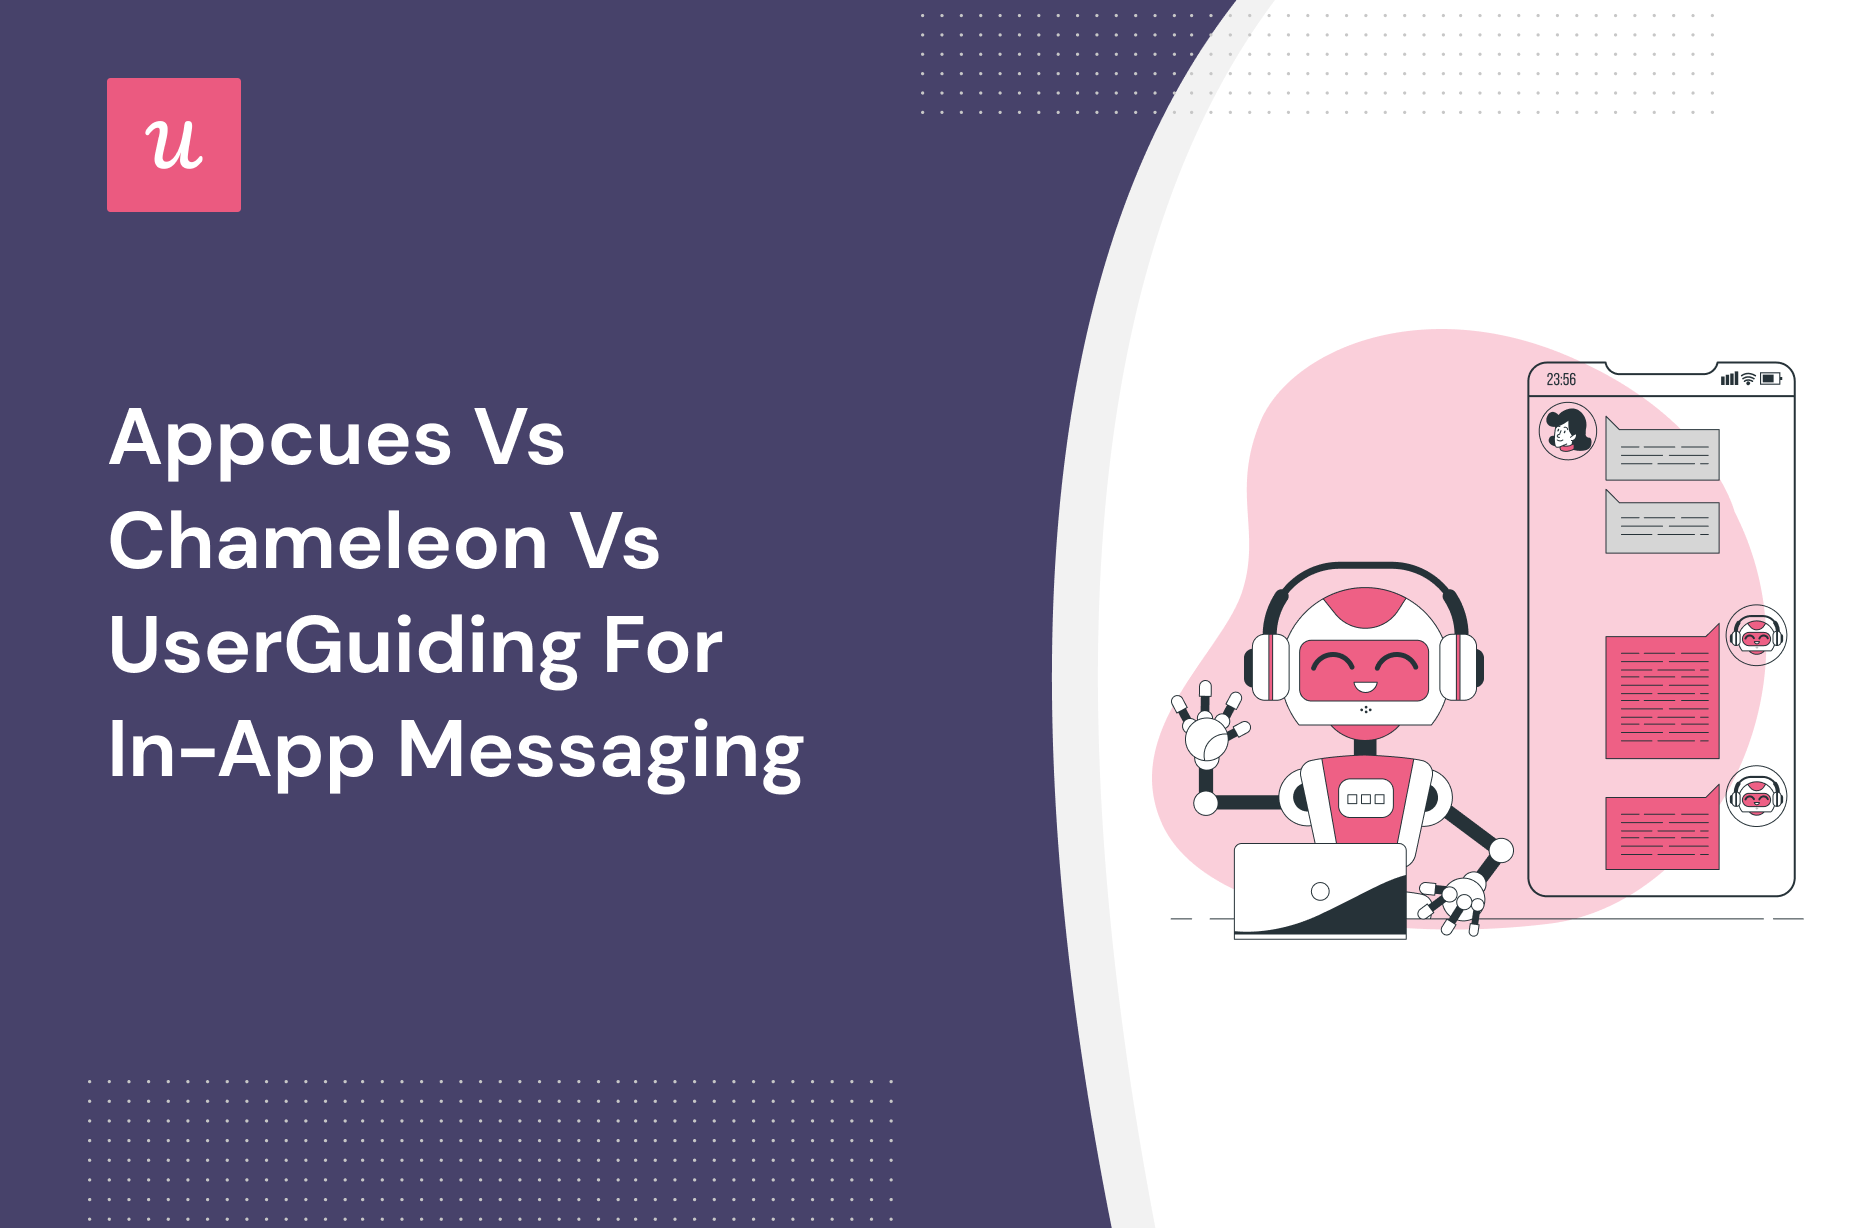 Appcues vs Chameleon vs UserGuiding for In-App Messaging